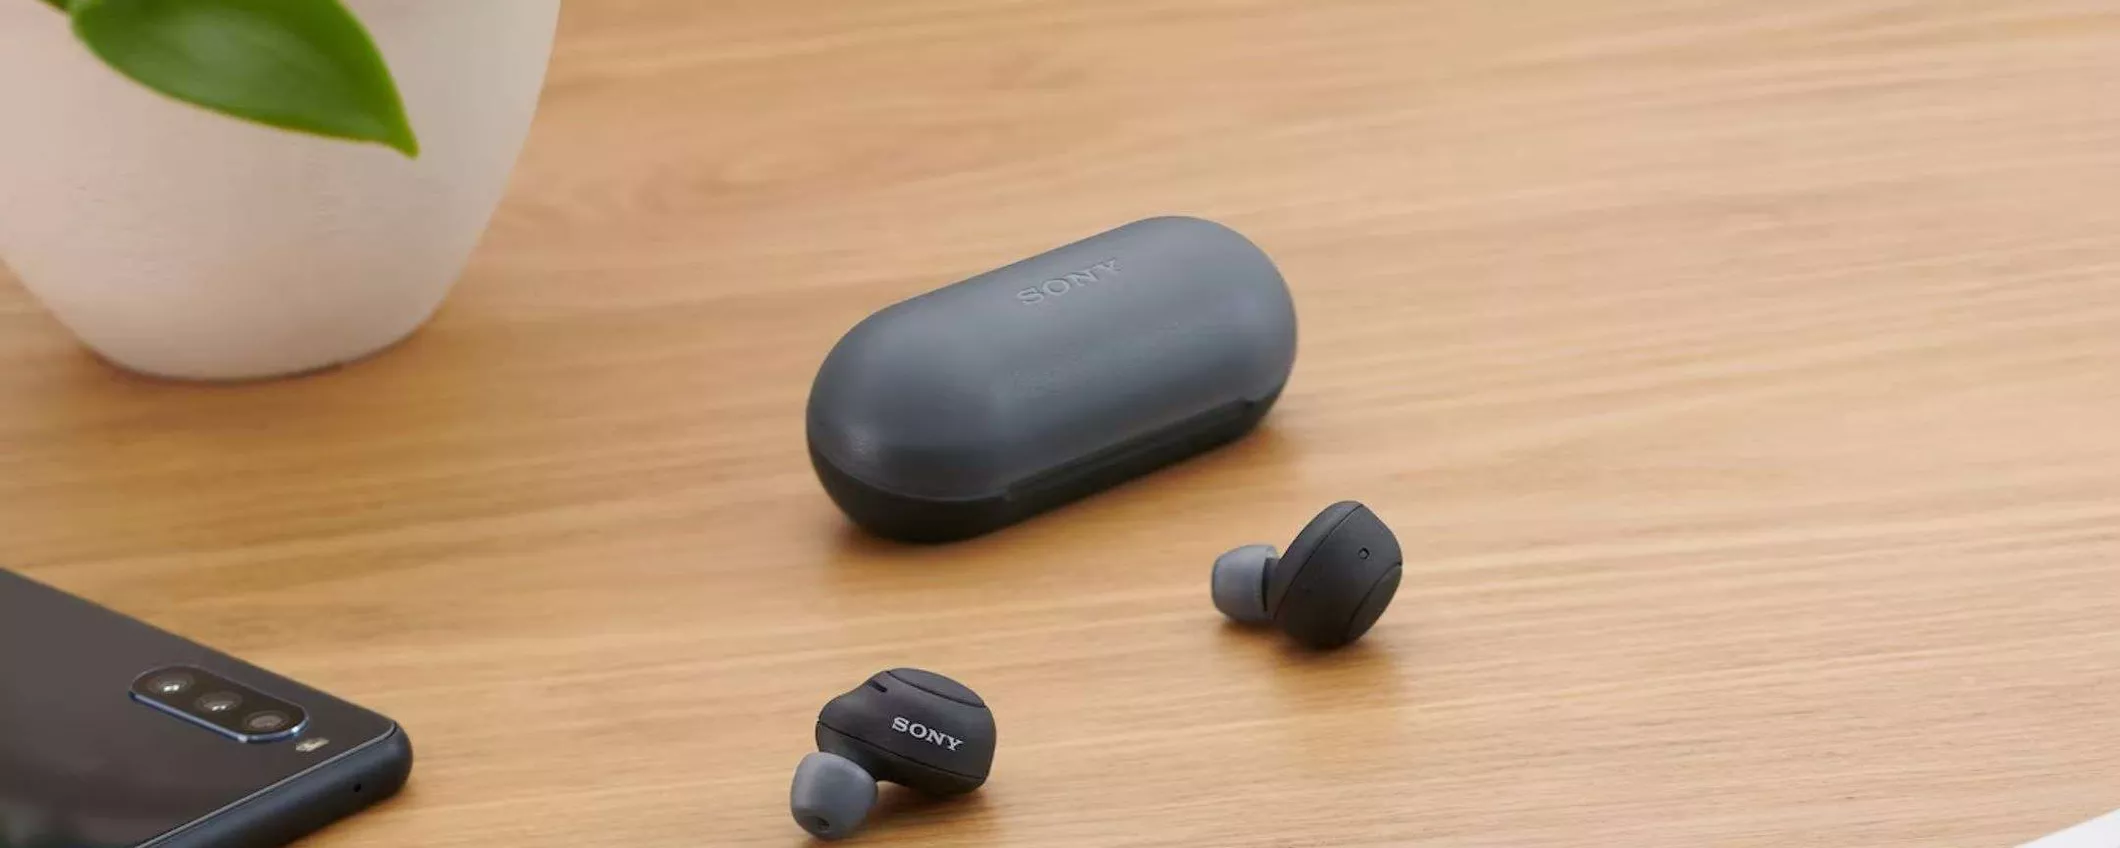 Auricolari Bluetooth Sony in offerta a un SUPER PREZZO su Amazon (-53%)